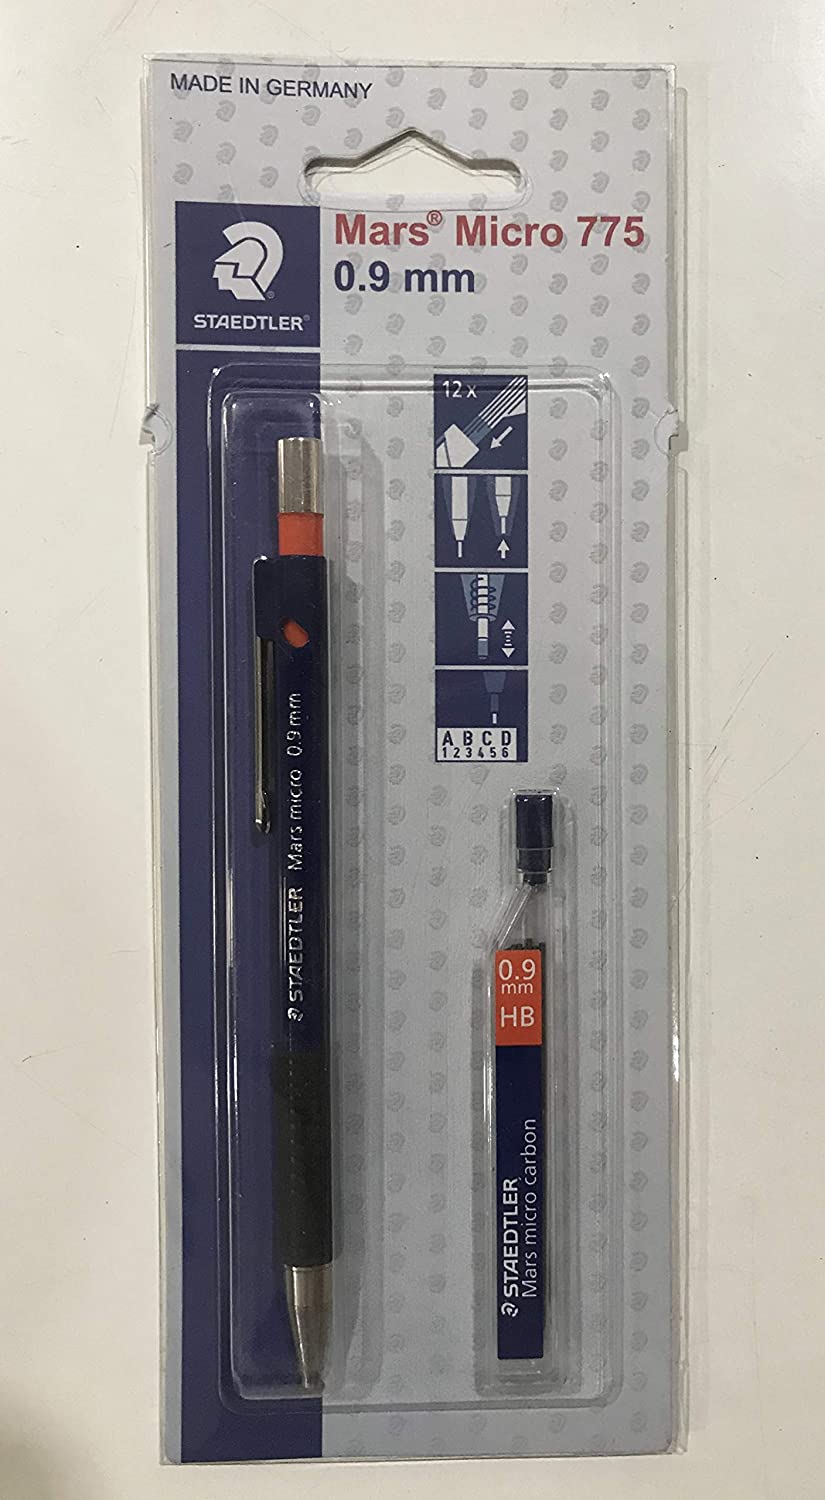 Detec™ Staedtler मार्स माइक्रो मैकेनिकल पेंसिल 0.9 मिमी में लिखने, ड्राइंग और ड्राफ्टिंग के लिए लीड के 1 पैक के साथ